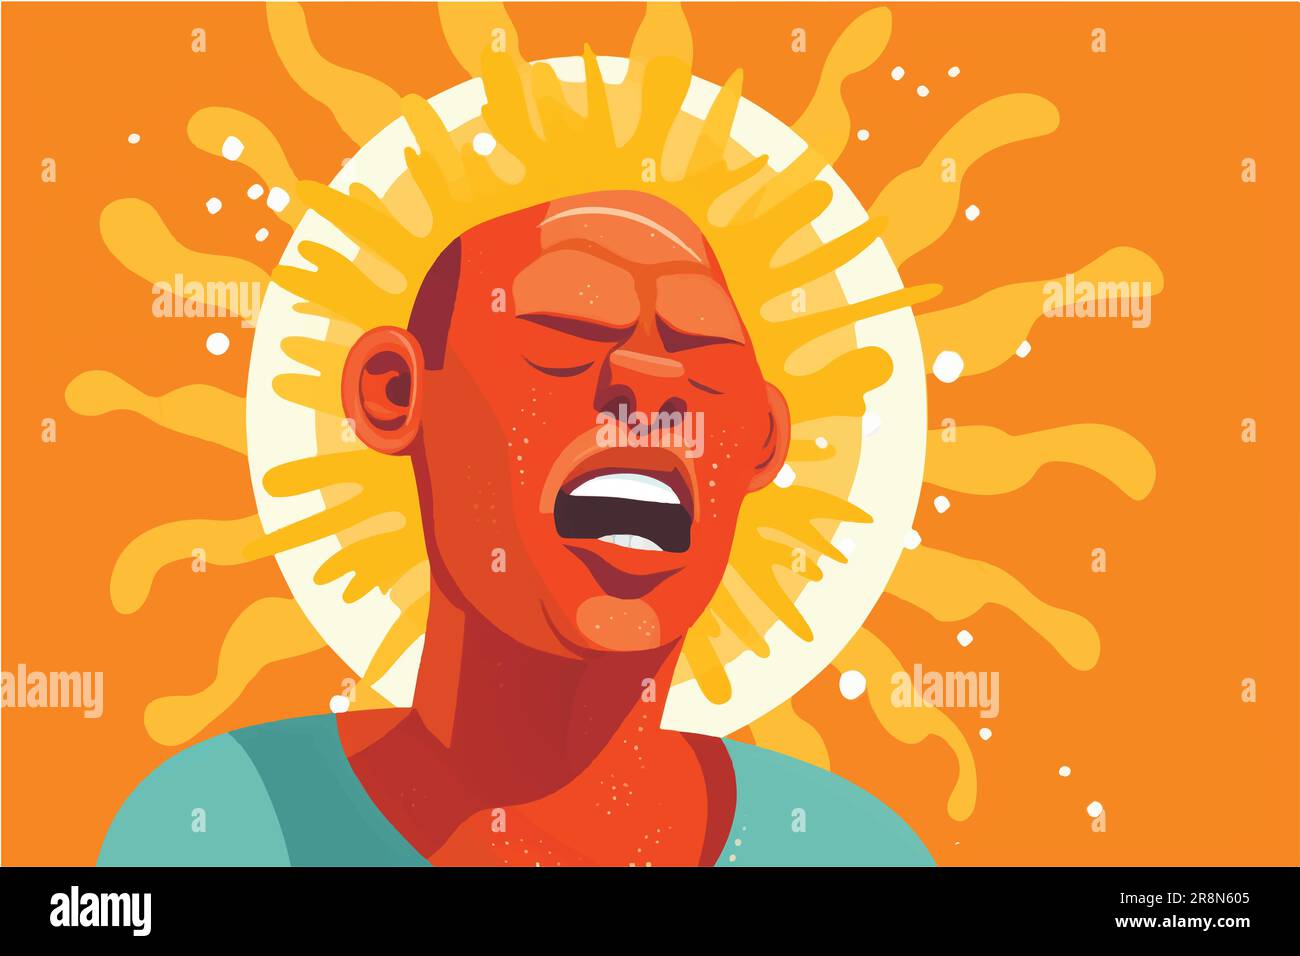 Cartoon-Vektor-Darstellung Eines Mannes, der unter einer wütenden Sonne schwitzt und eine Hitzewelle oder einen sehr heißen Sommertag darstellt Stock Vektor